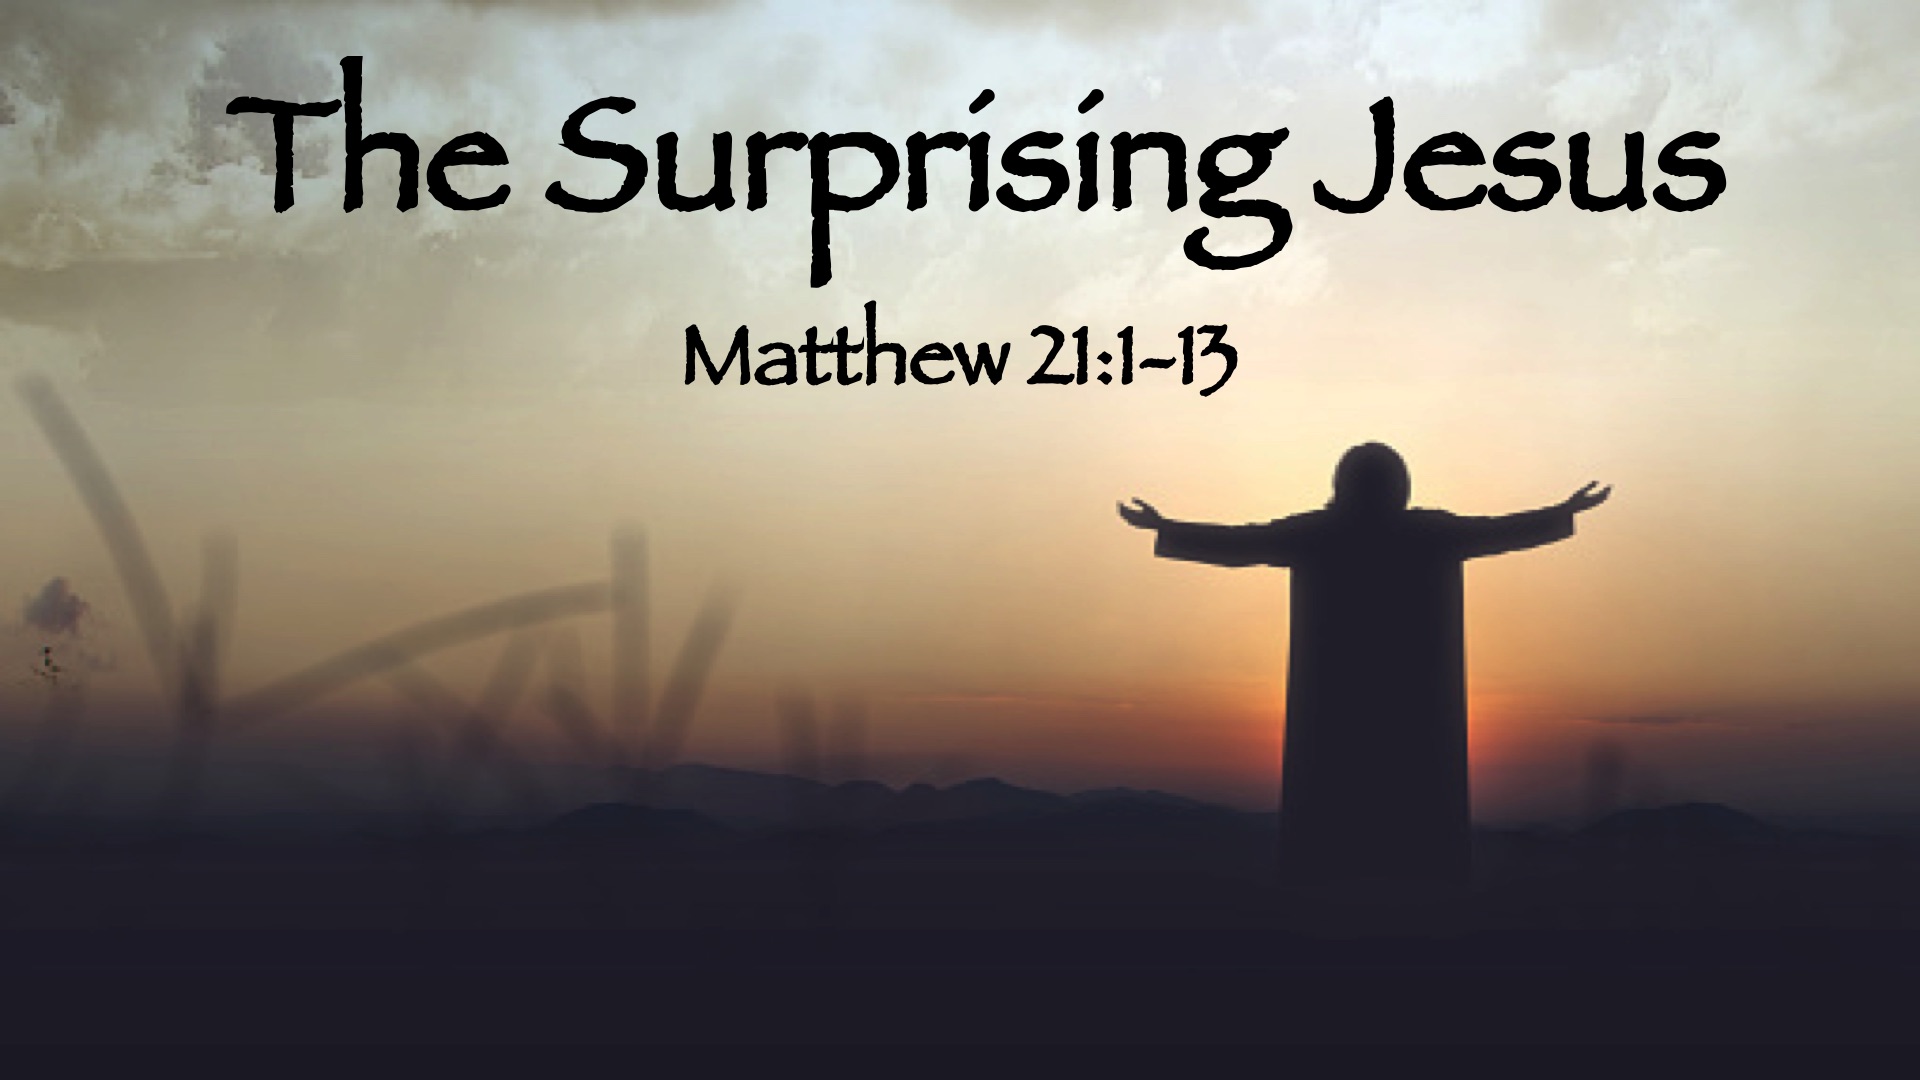 “The Surprising Jesus”